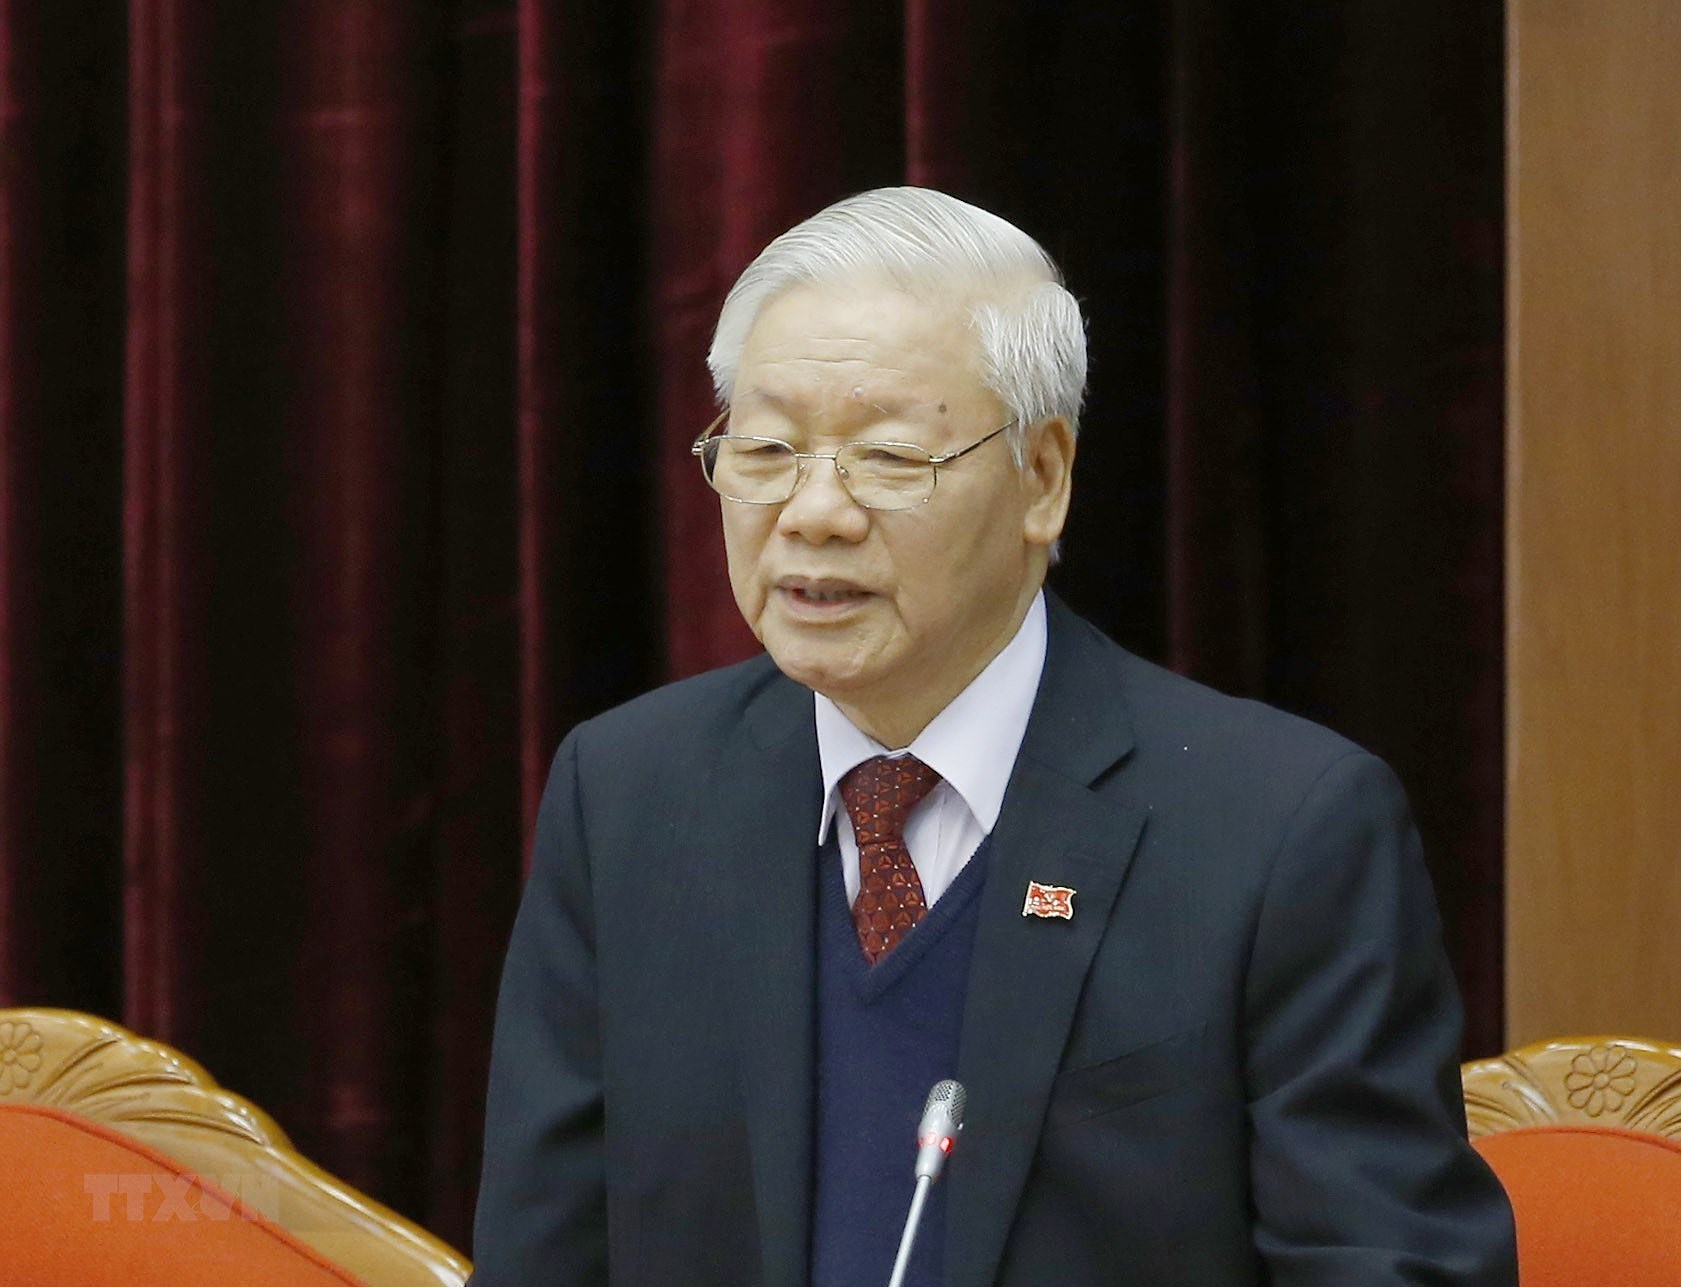 Đồng chí Nguyễn Phú Trọng được bầu làm Tổng Bí thư